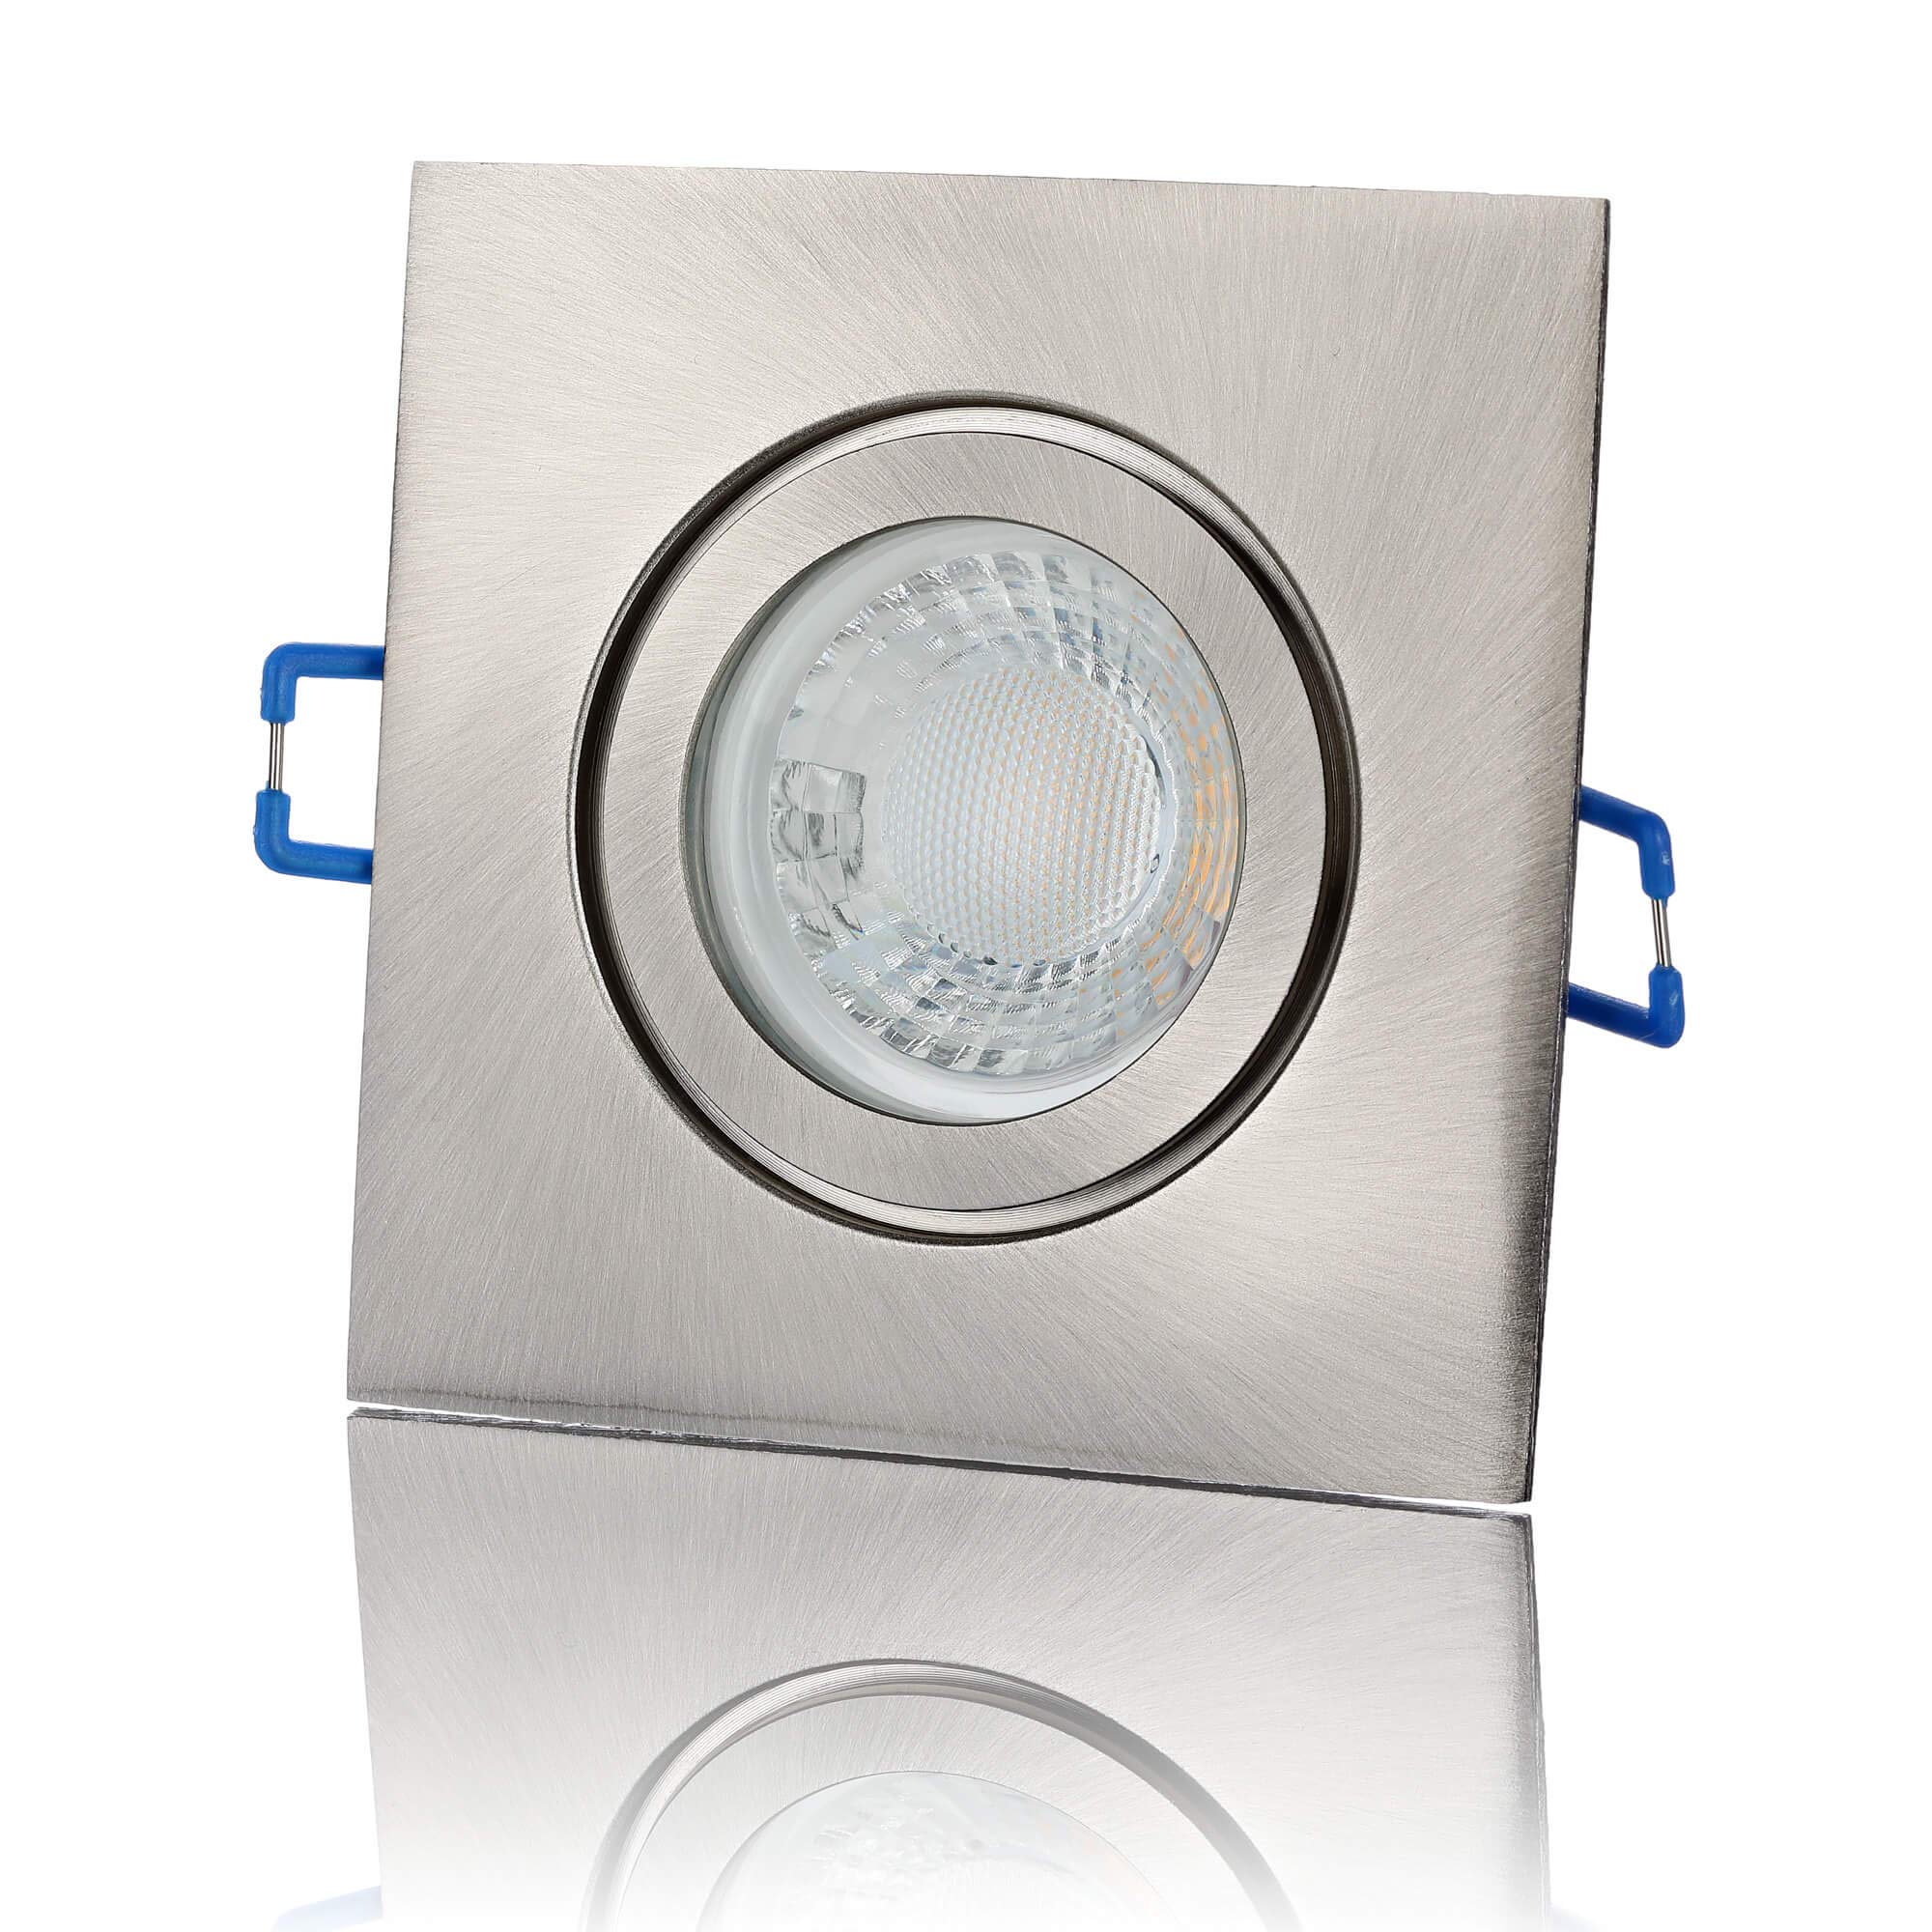 lambado® Premium LED Spot IP44 Flach Edelstahl gebürstet - Hell & Sparsam inkl. 230V 5W Strahler warmweiß dimmbar - Moderne Beleuchtung durch zeitlose Bad-Einbaustrahler/Deckenstrahler für Außen